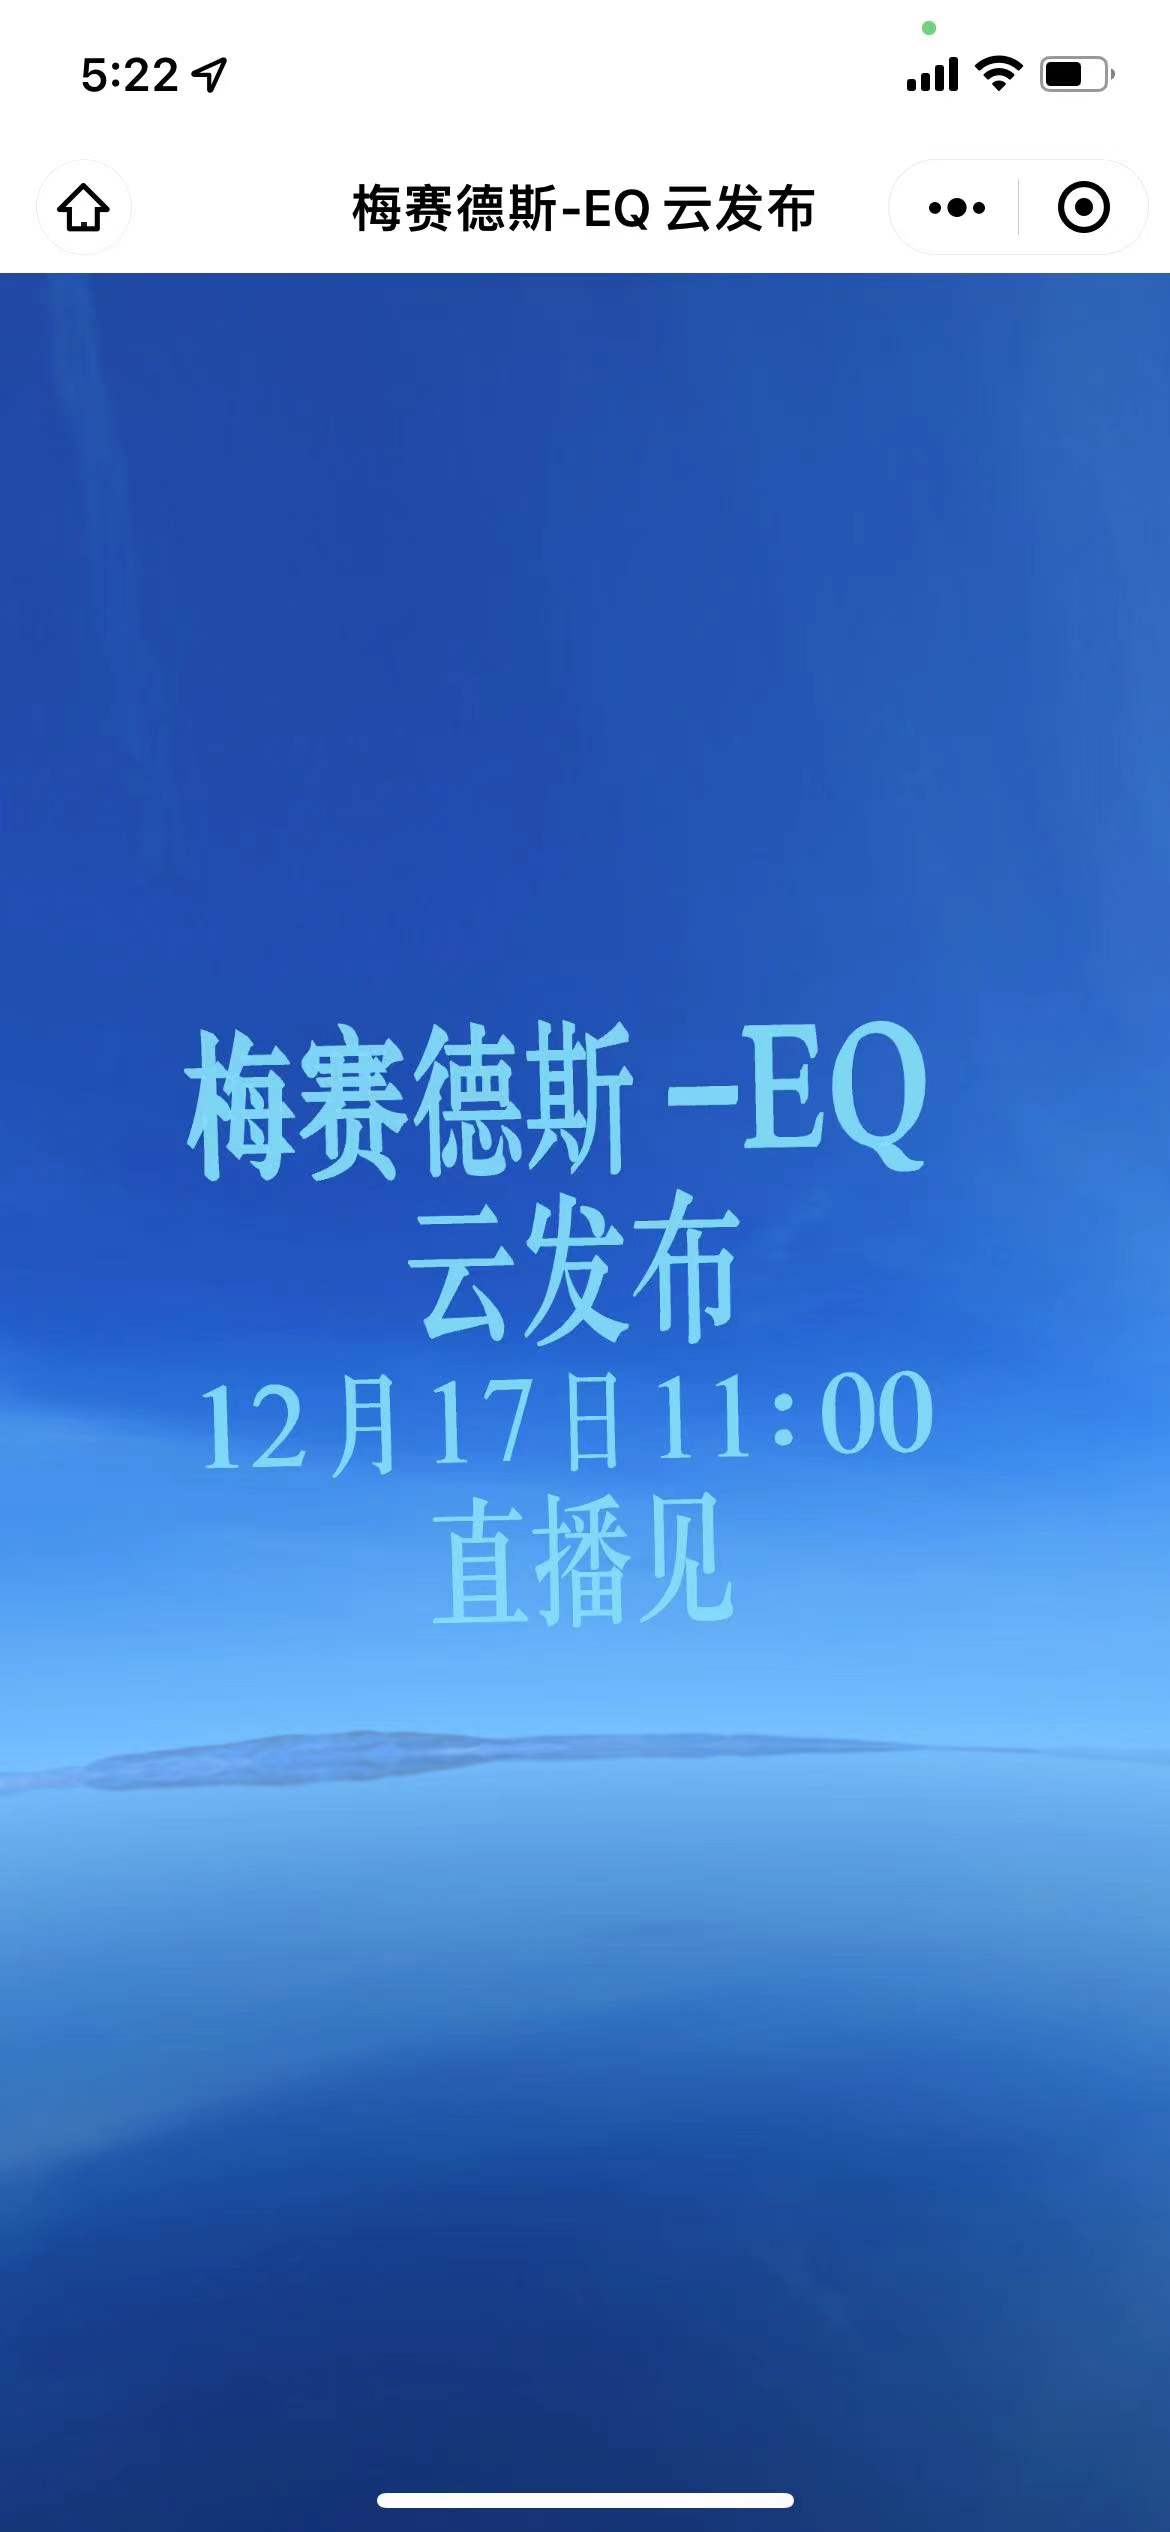 梅赛德斯-EQ云发布邀请函小程序